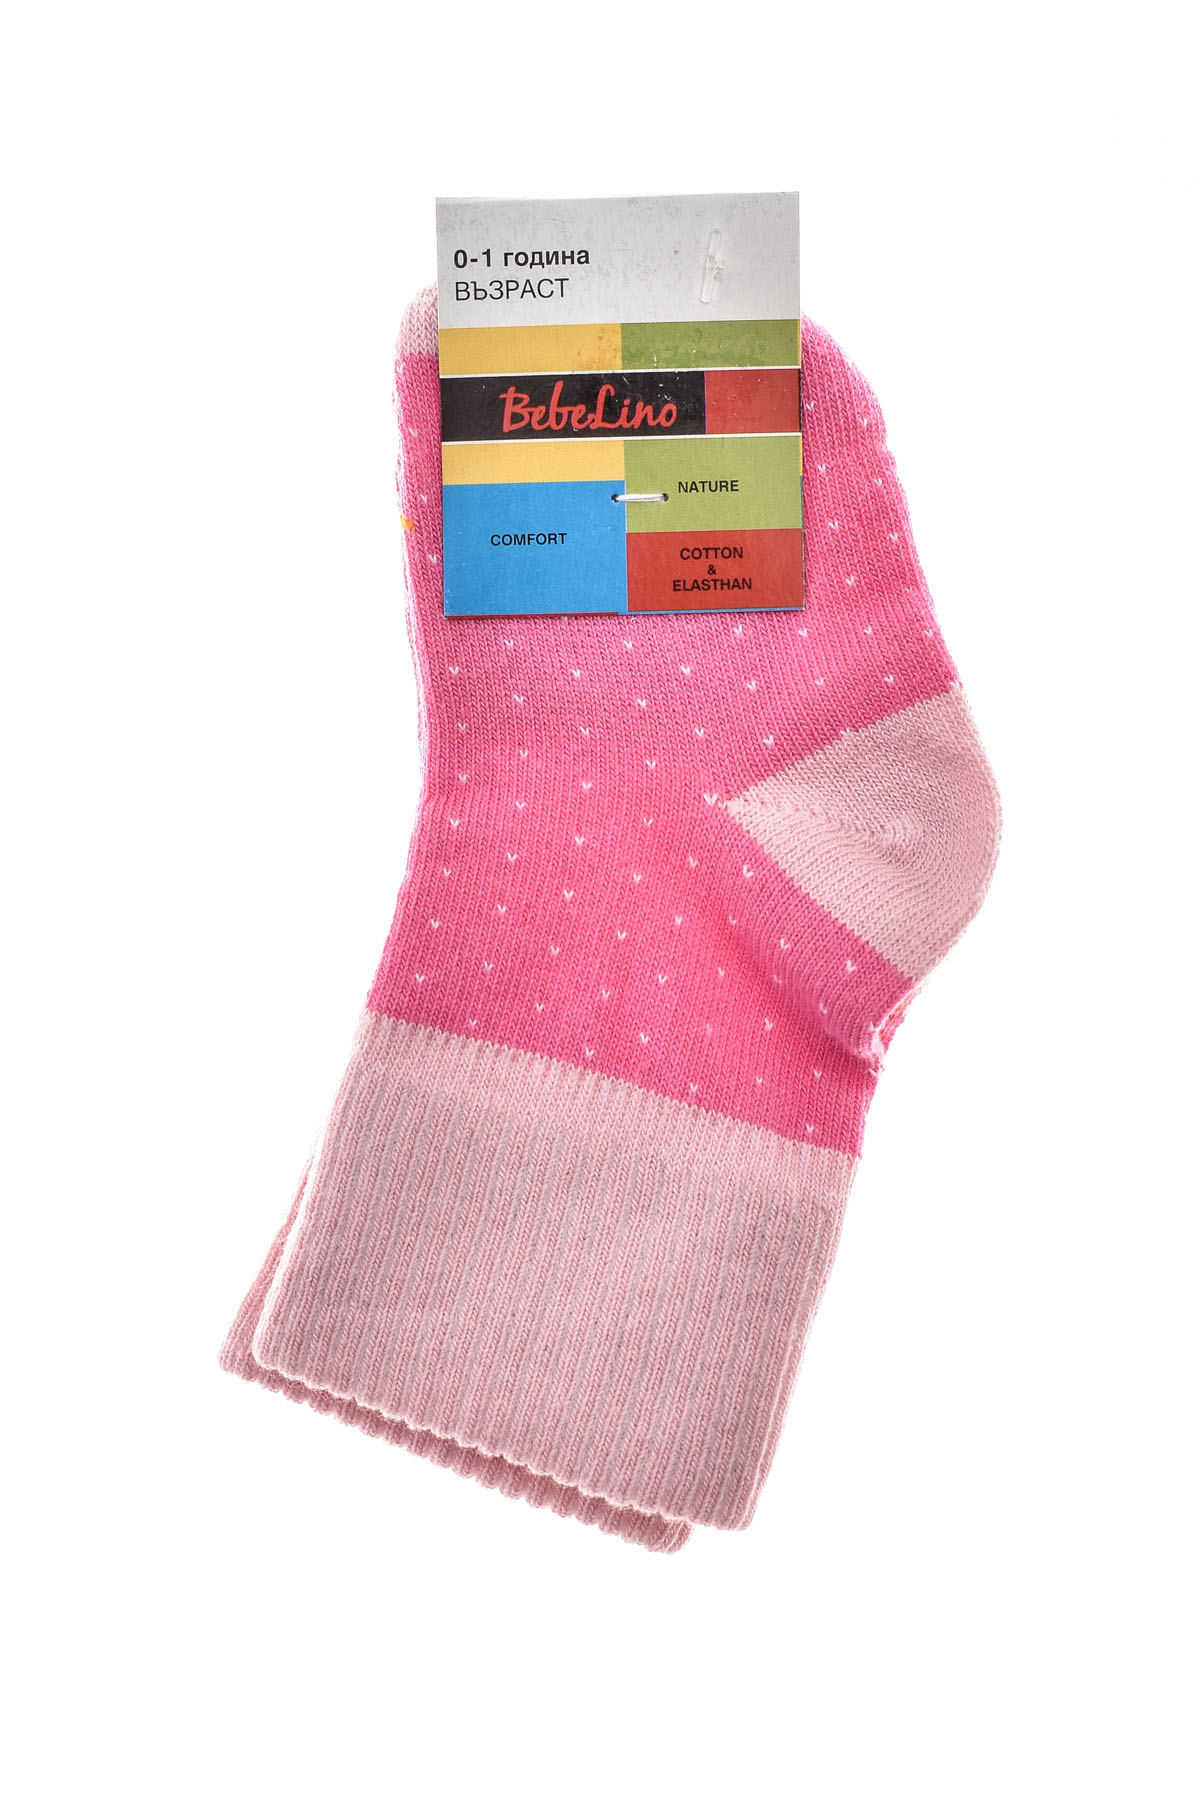 Baby socks - BebeLino - 1